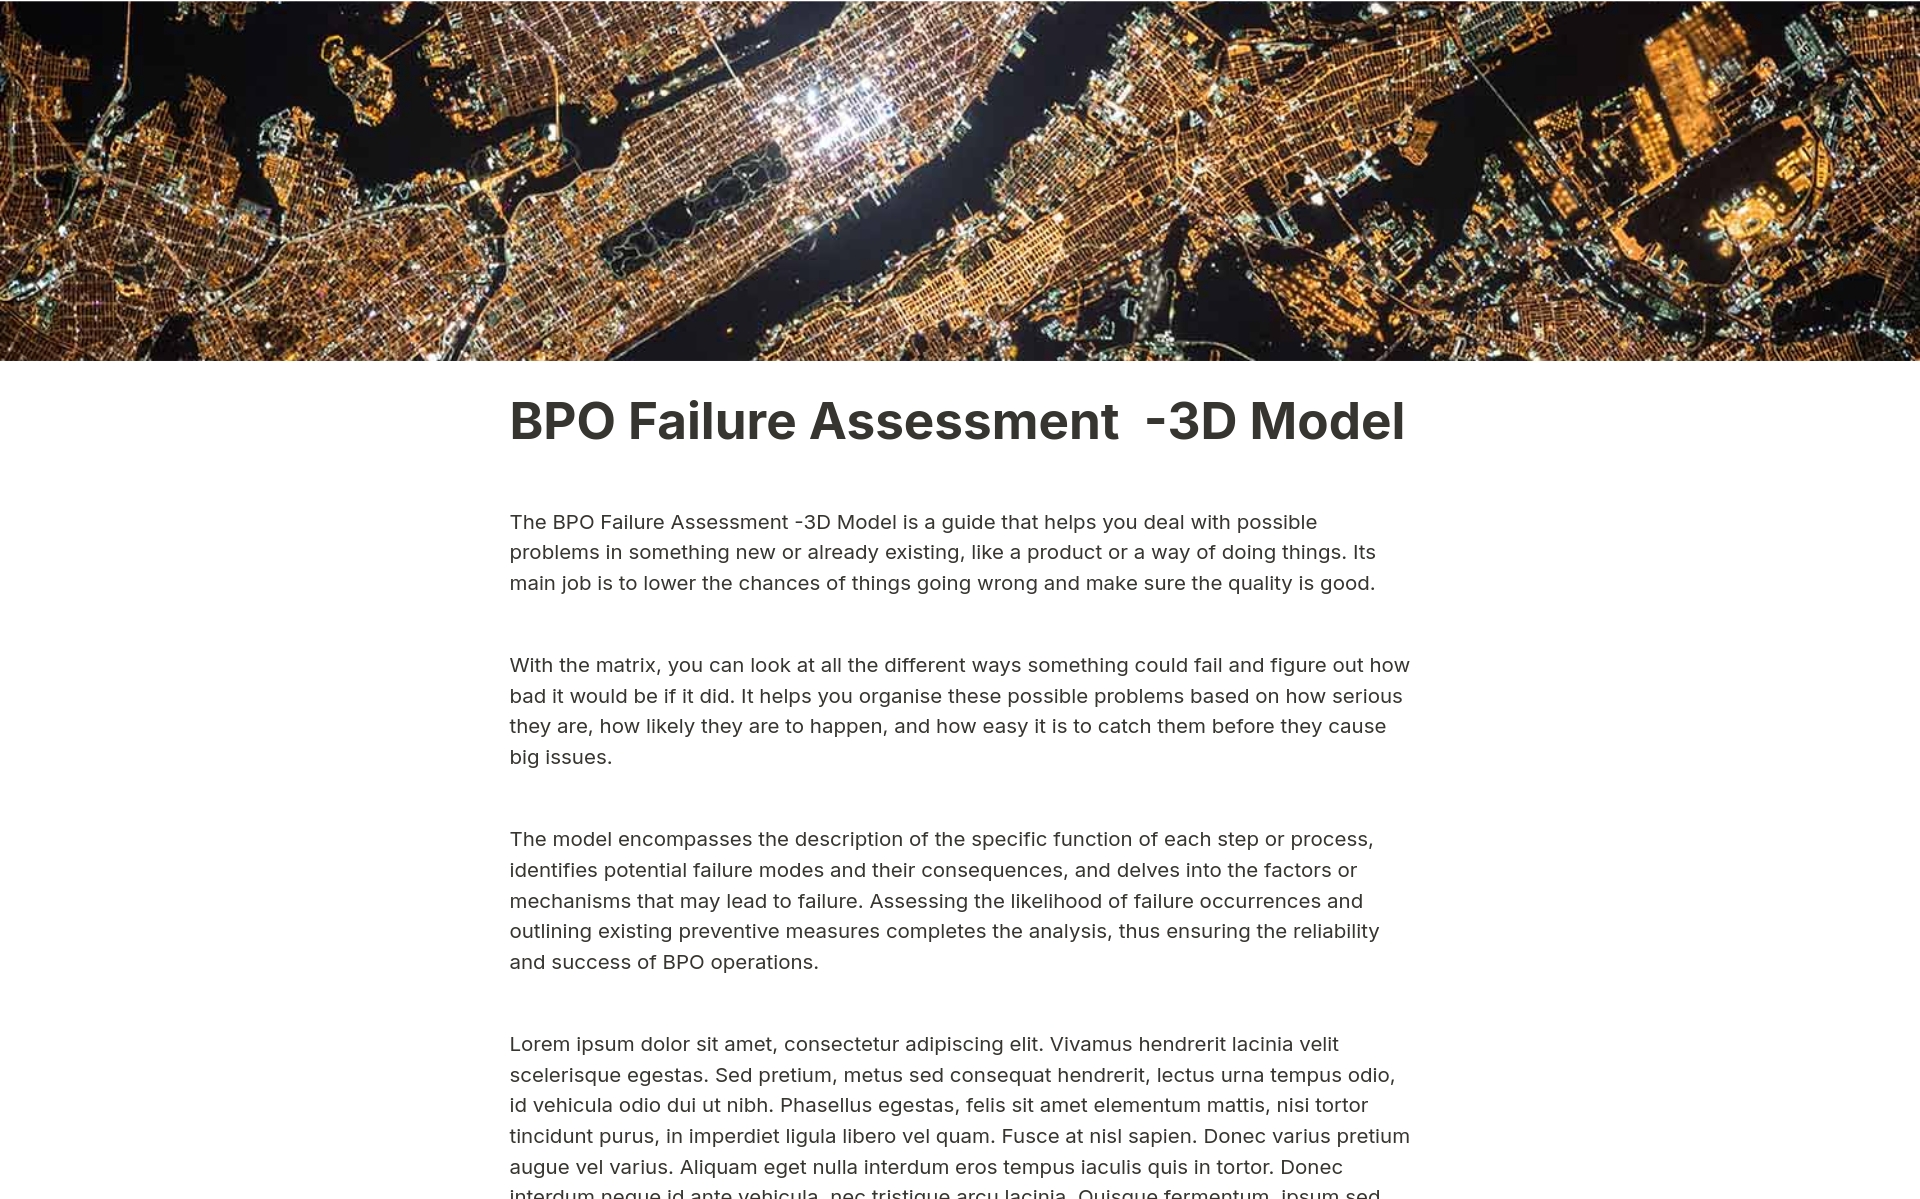 Aperçu du modèle de BPO Failure Assessment  -3D Model